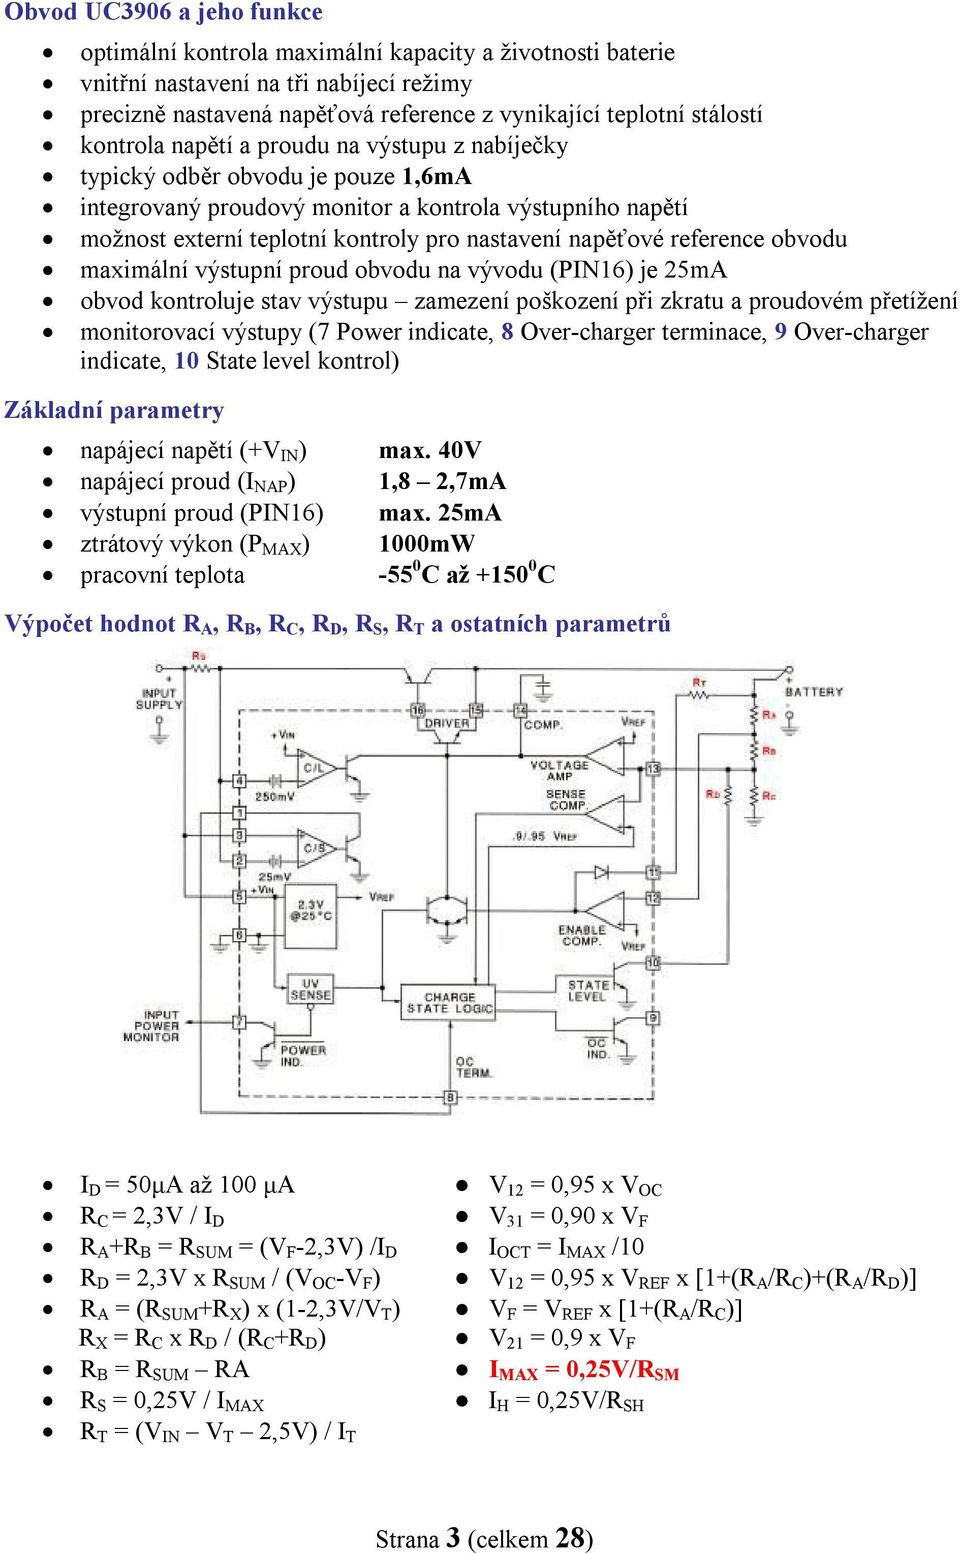 reference obvodu maximální výstupní proud obvodu na vývodu (PIN16) je 25mA obvod kontroluje stav výstupu zamezení poškození při zkratu a proudovém přetížení monitorovací výstupy (7 Power indicate, 8